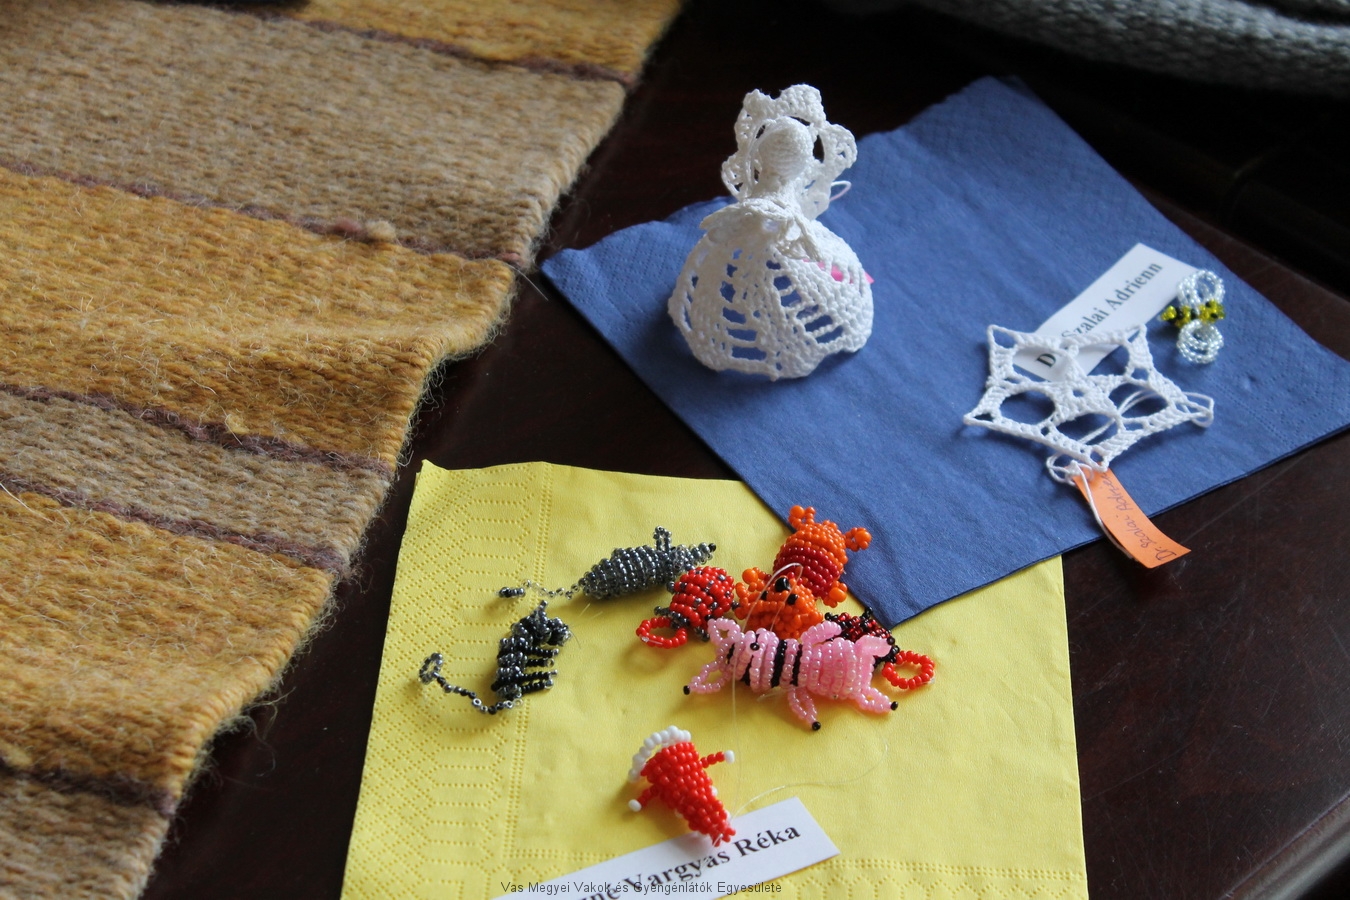 Kertészné Vargyas Réka gyöngyből fűzött állatkái és Dr. Szalai Adrienn horgolása látható.